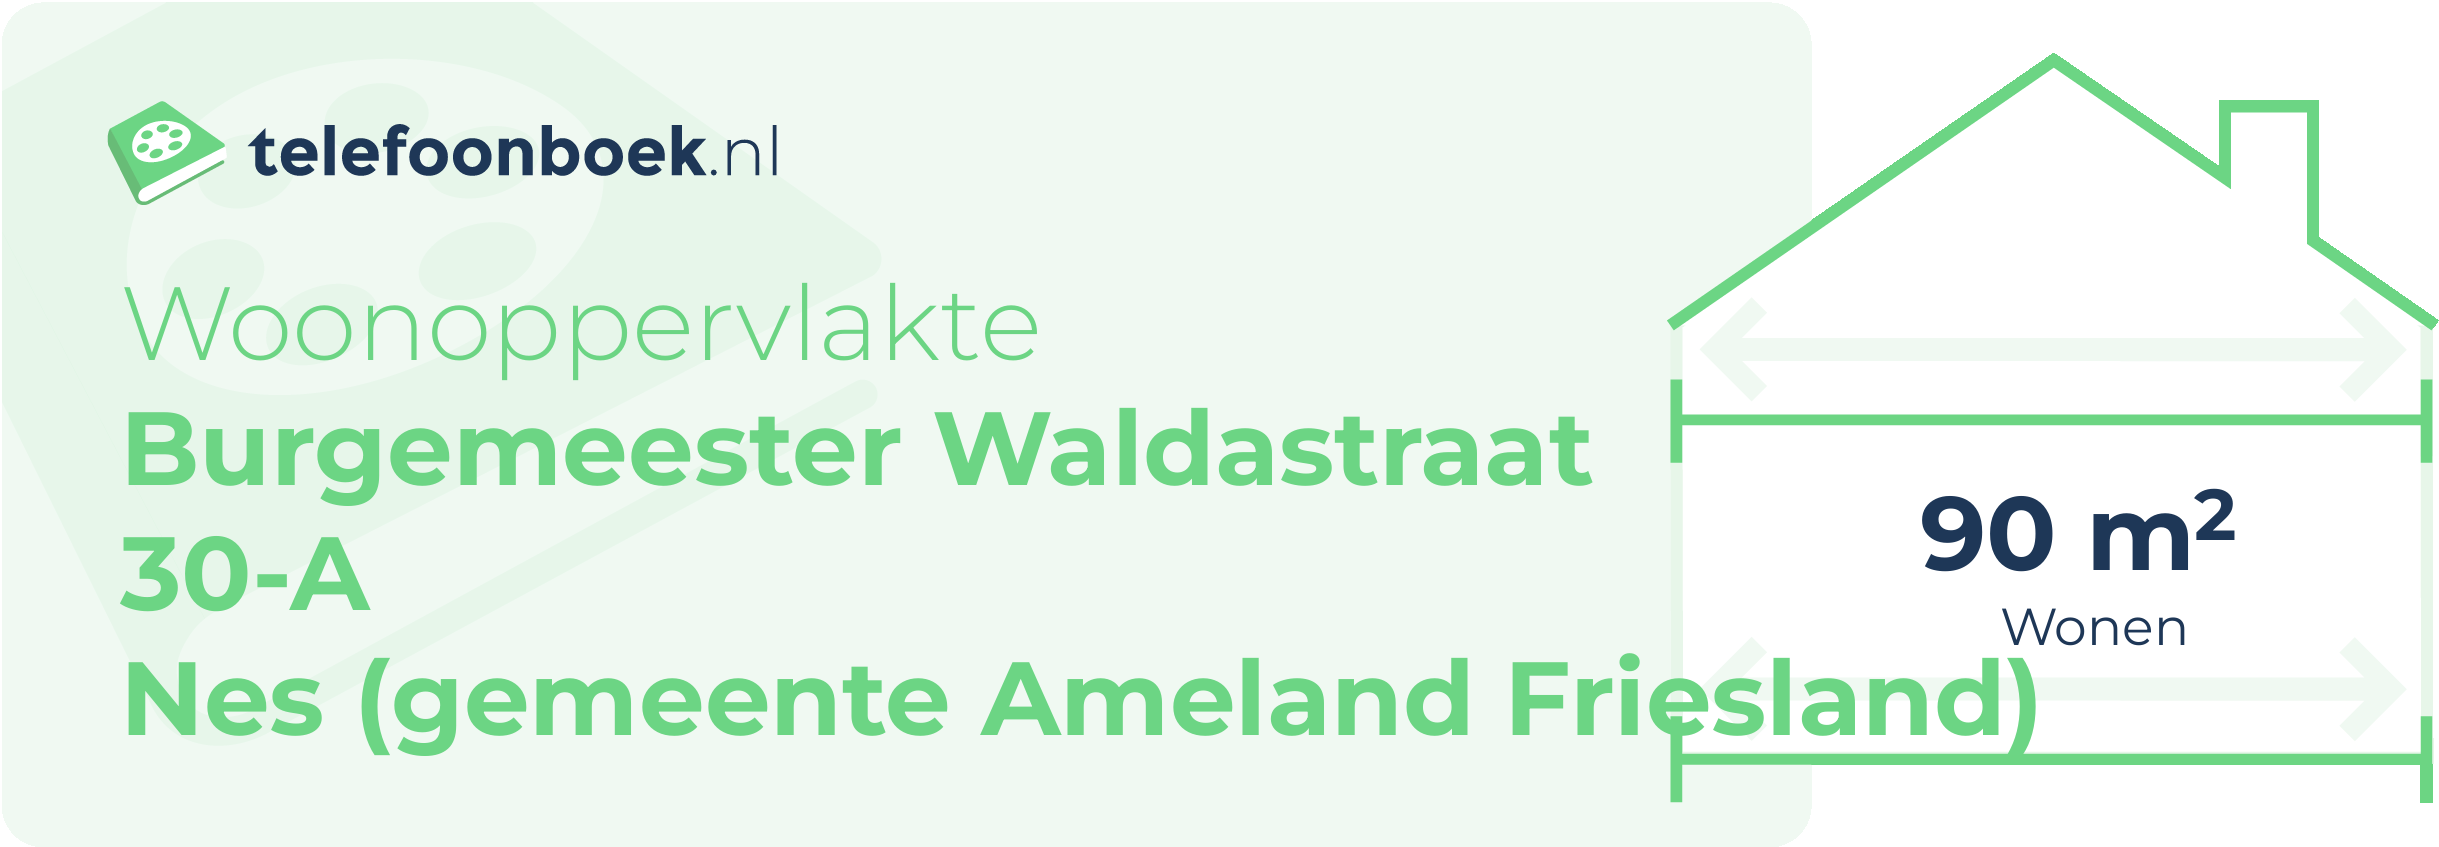 Woonoppervlakte Burgemeester Waldastraat 30-A Nes (gemeente Ameland Friesland)